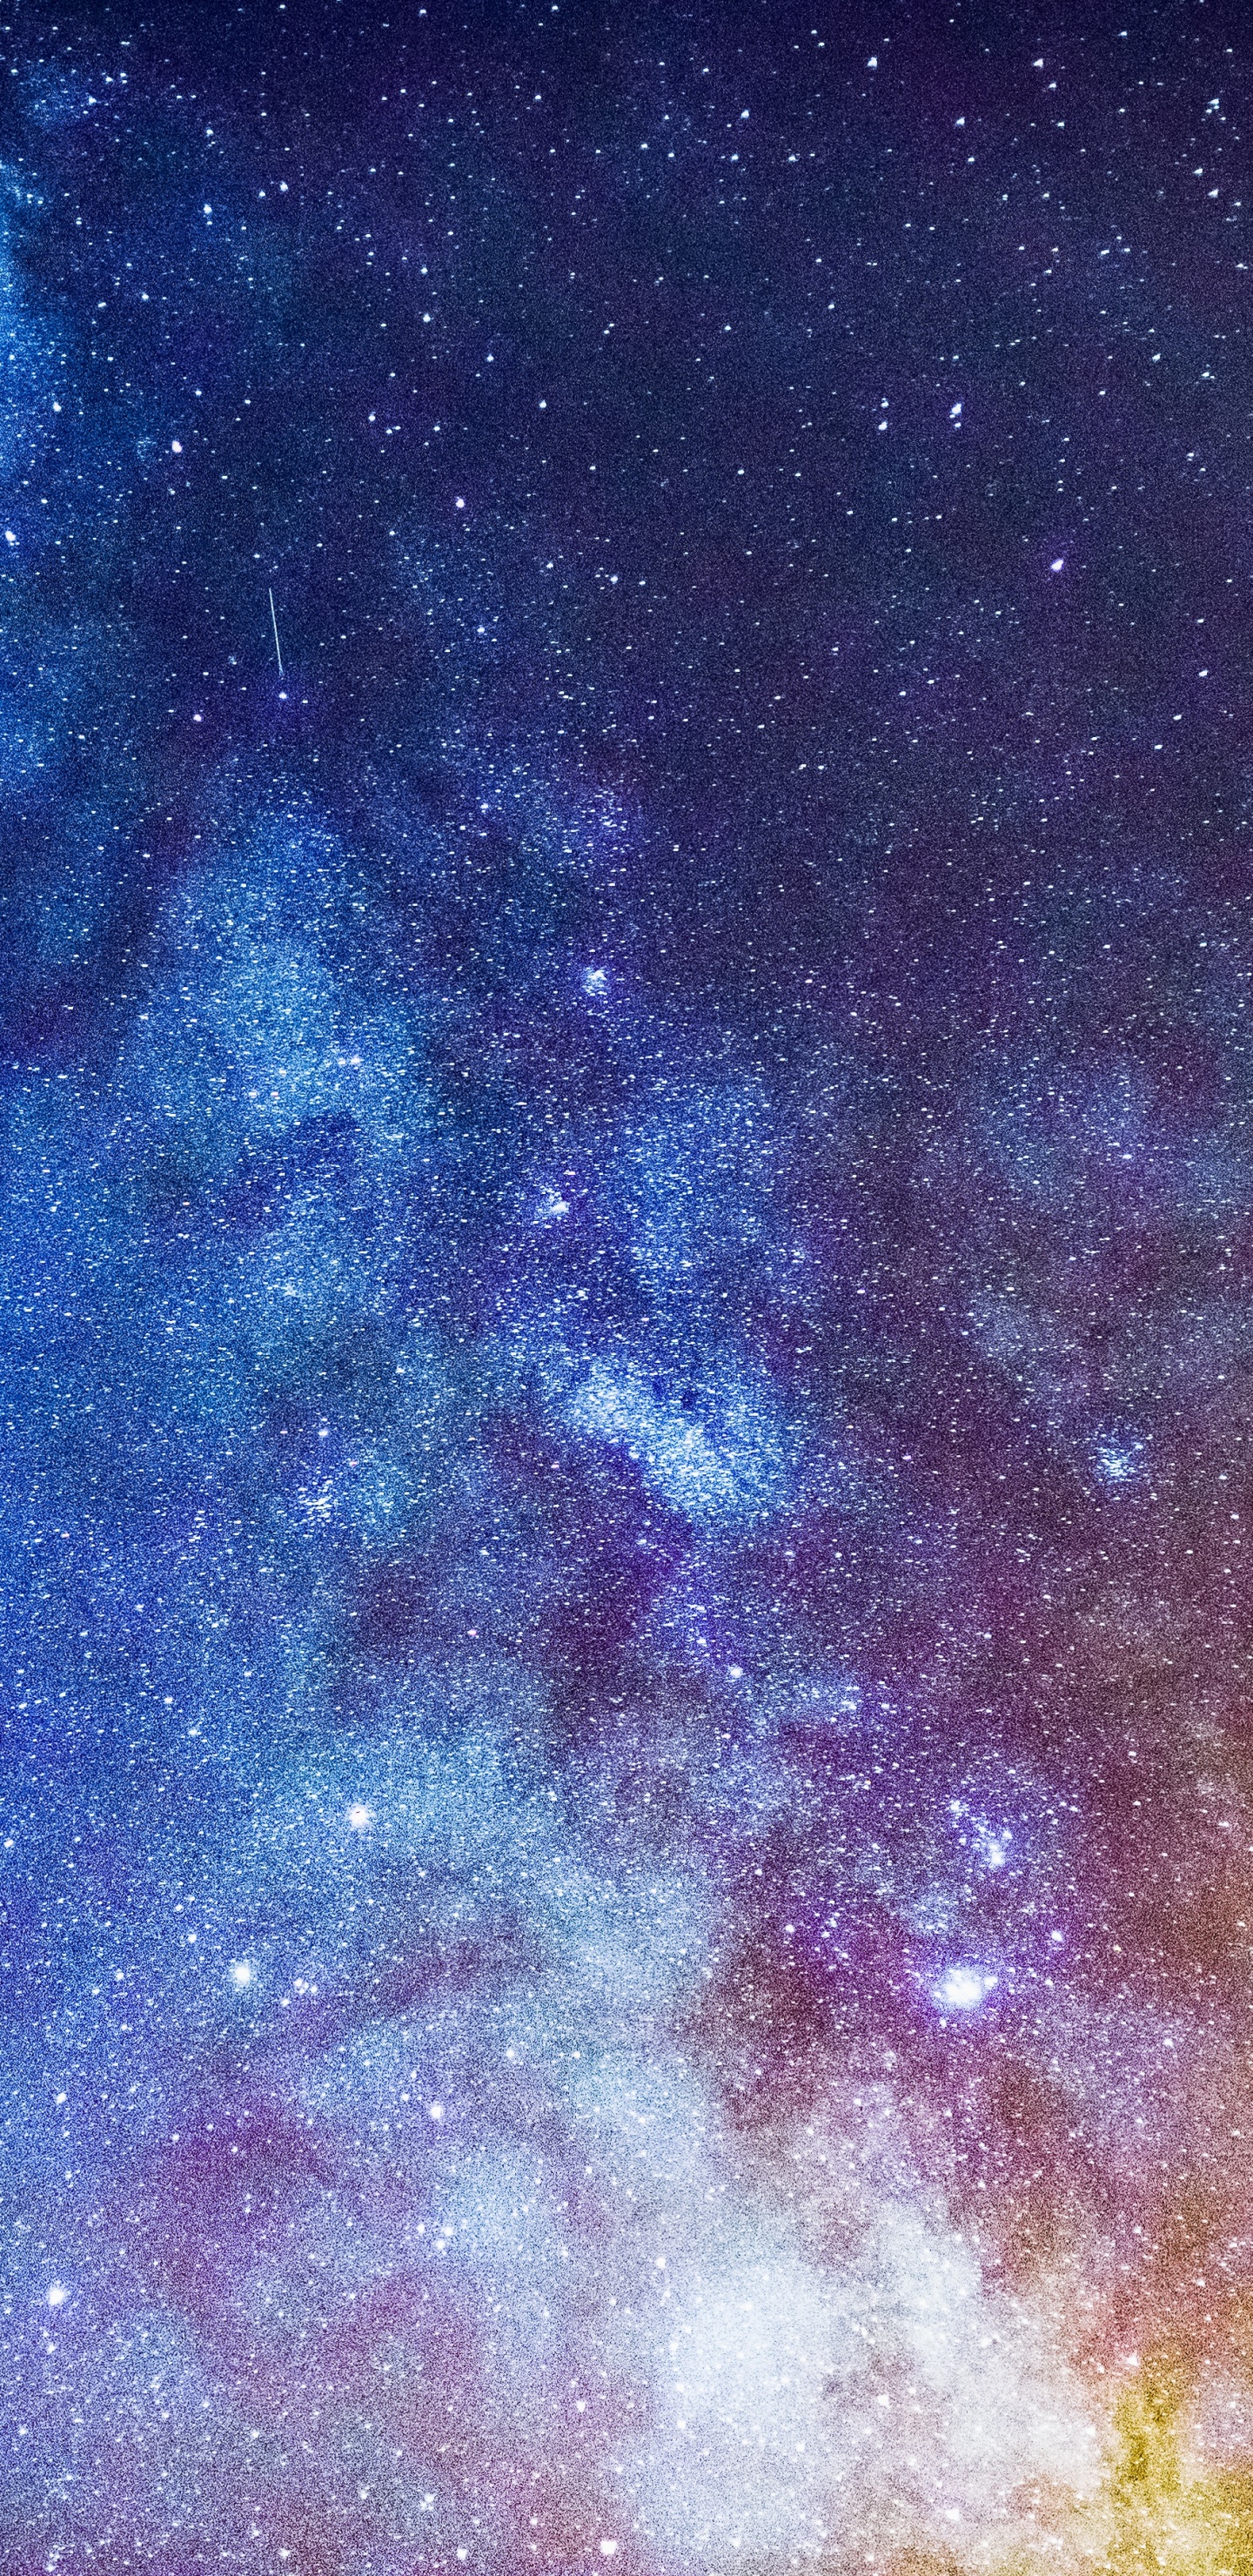 Cielo Nocturno Estrellado Azul y Marrón. Wallpaper in 1440x2960 Resolution